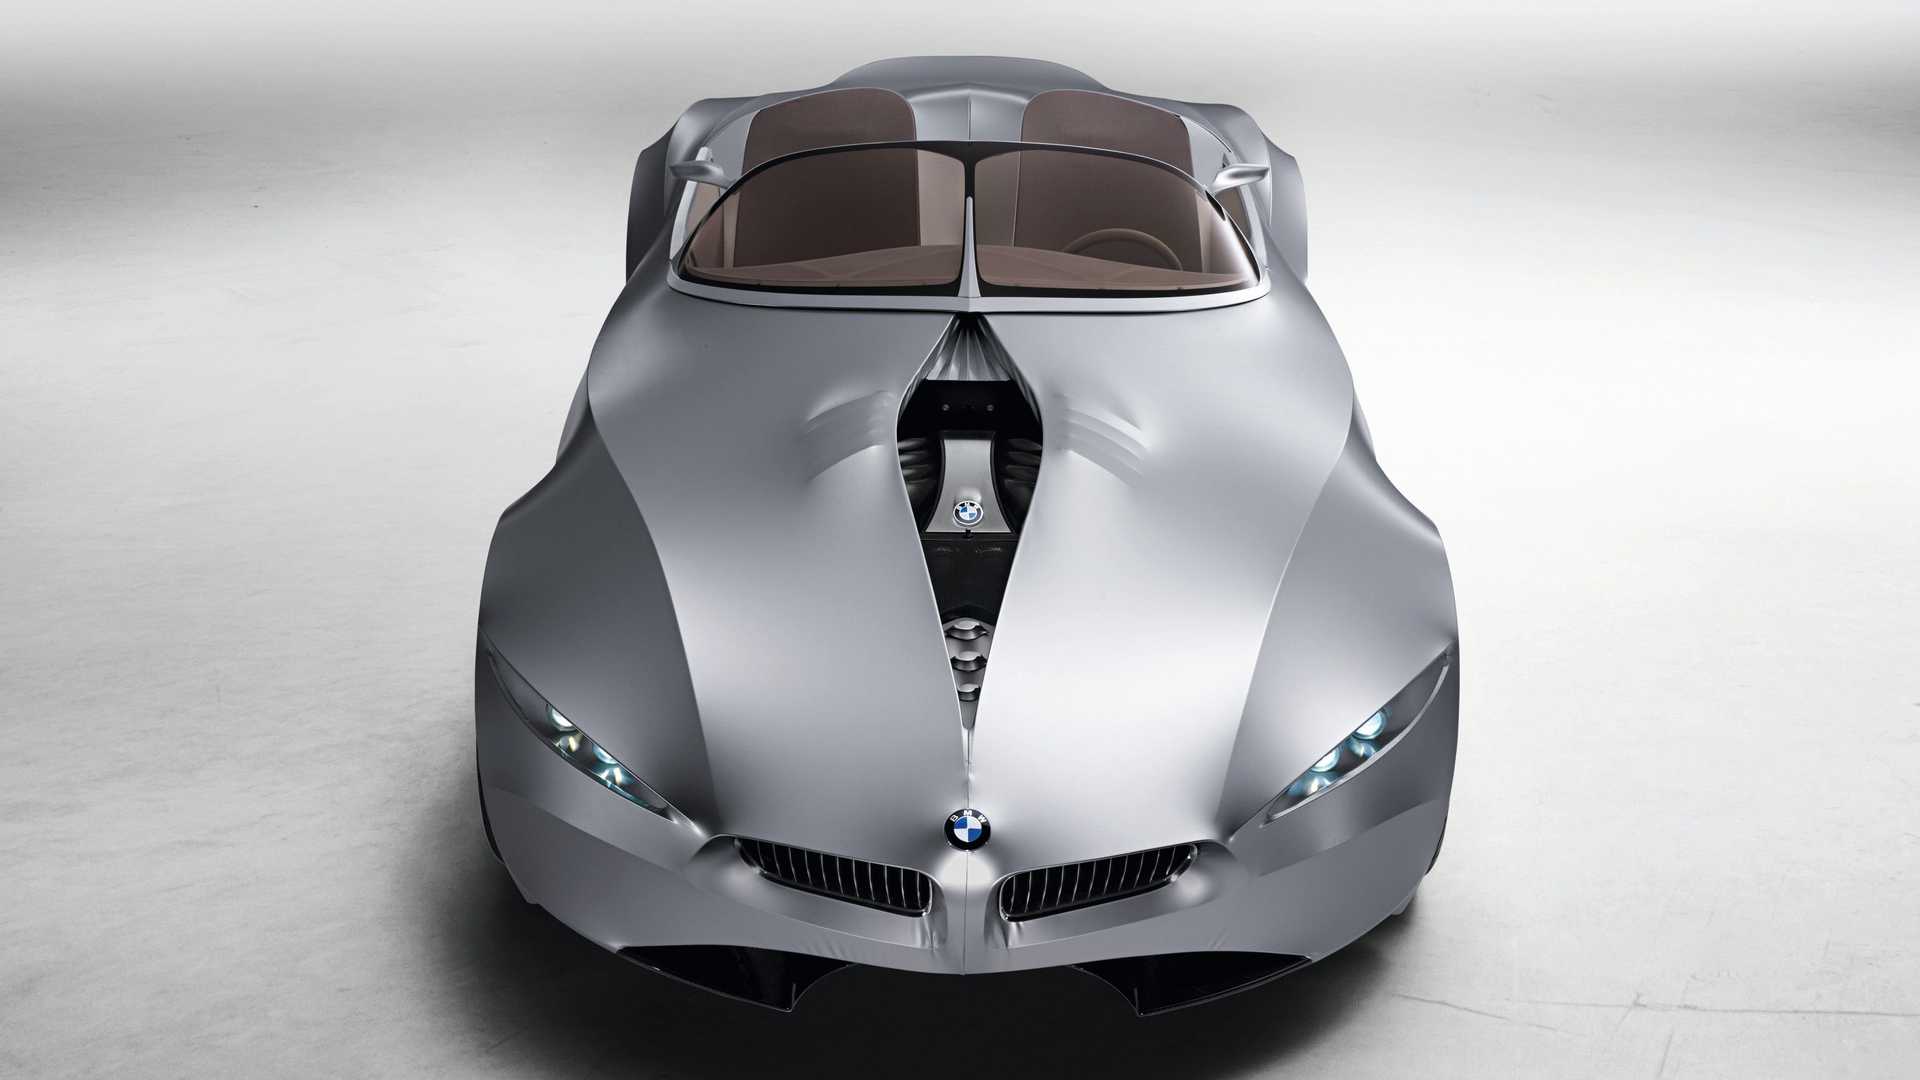 نمای بالا خودروی مفهومی روباز بی ام و گینا / BMW GINA concept convertible